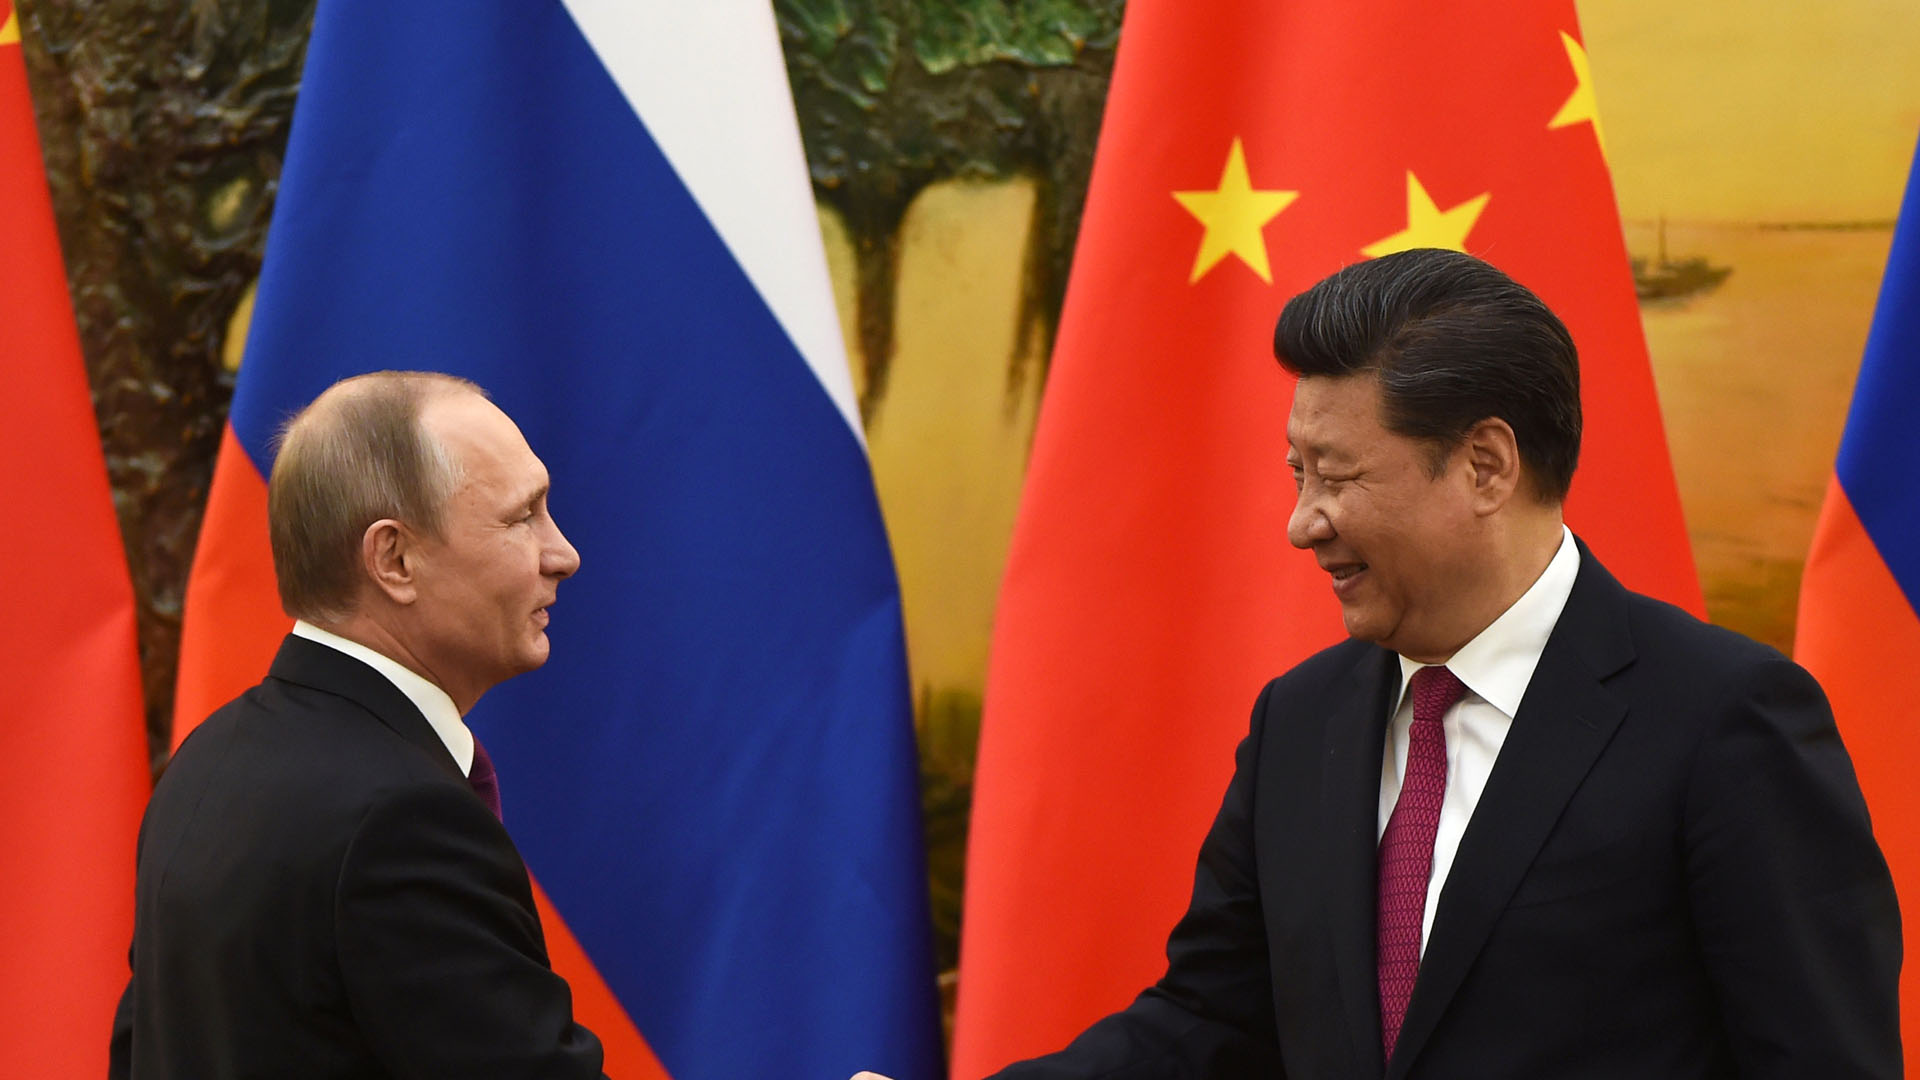 El mandatario chino dijo que ambos países quieren ser "amigos para siempre"